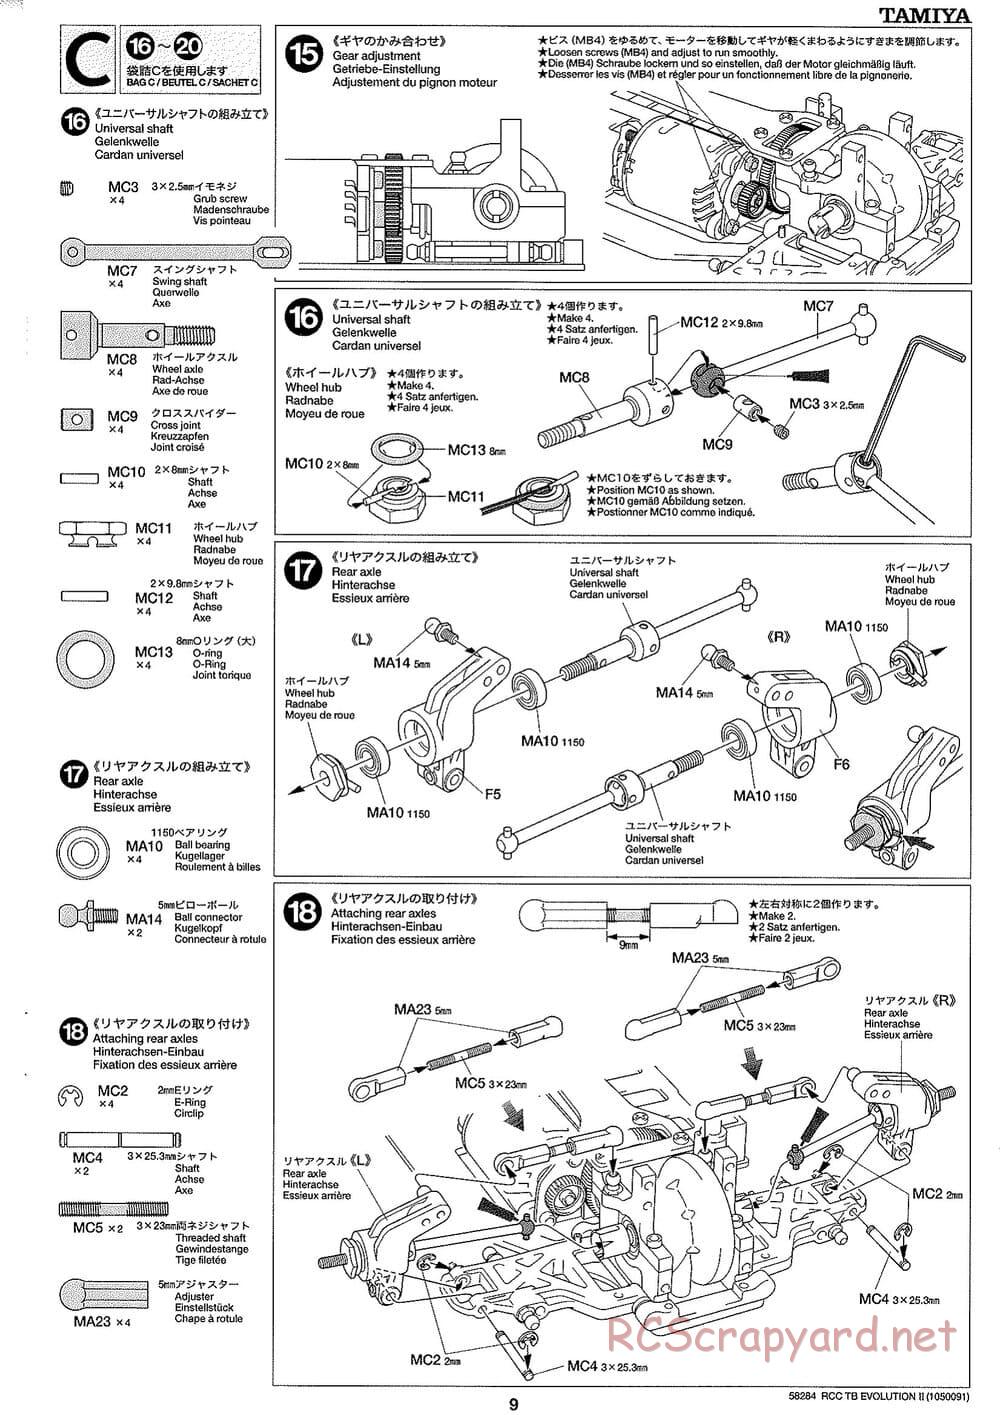 Tamiya - TB Evolution II Chassis - Manual - Page 9